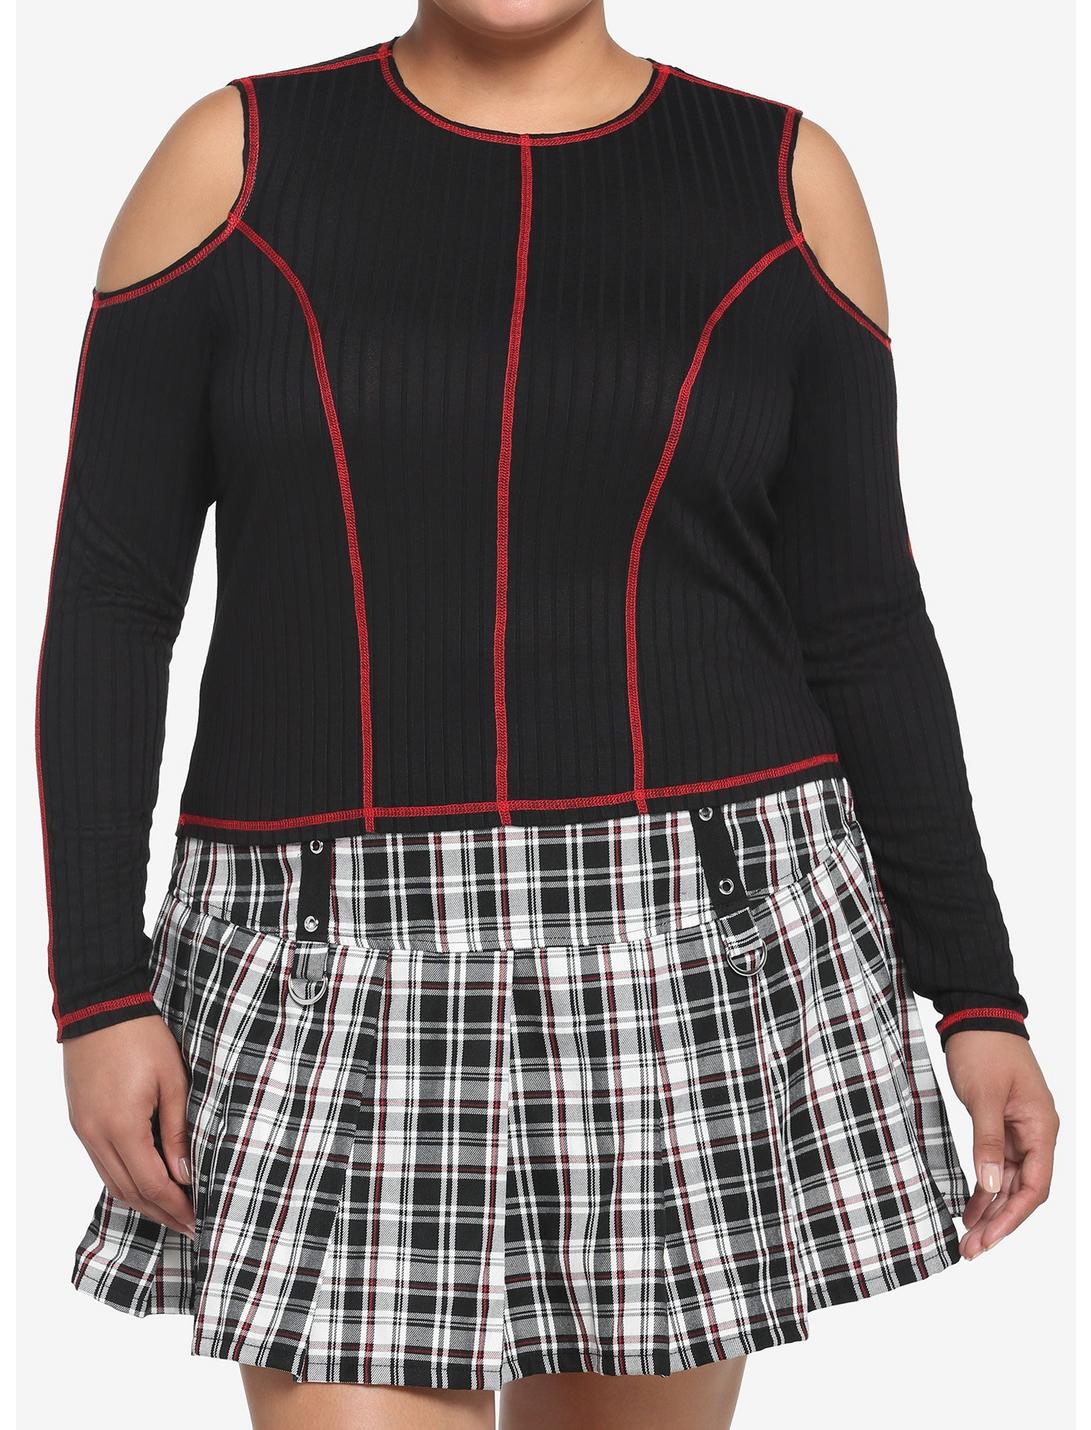 Black & Red Contrast Stitch Cold Shoulder Girls Crop Long-Sleeve Top Plus Size, BLACK, hi-res